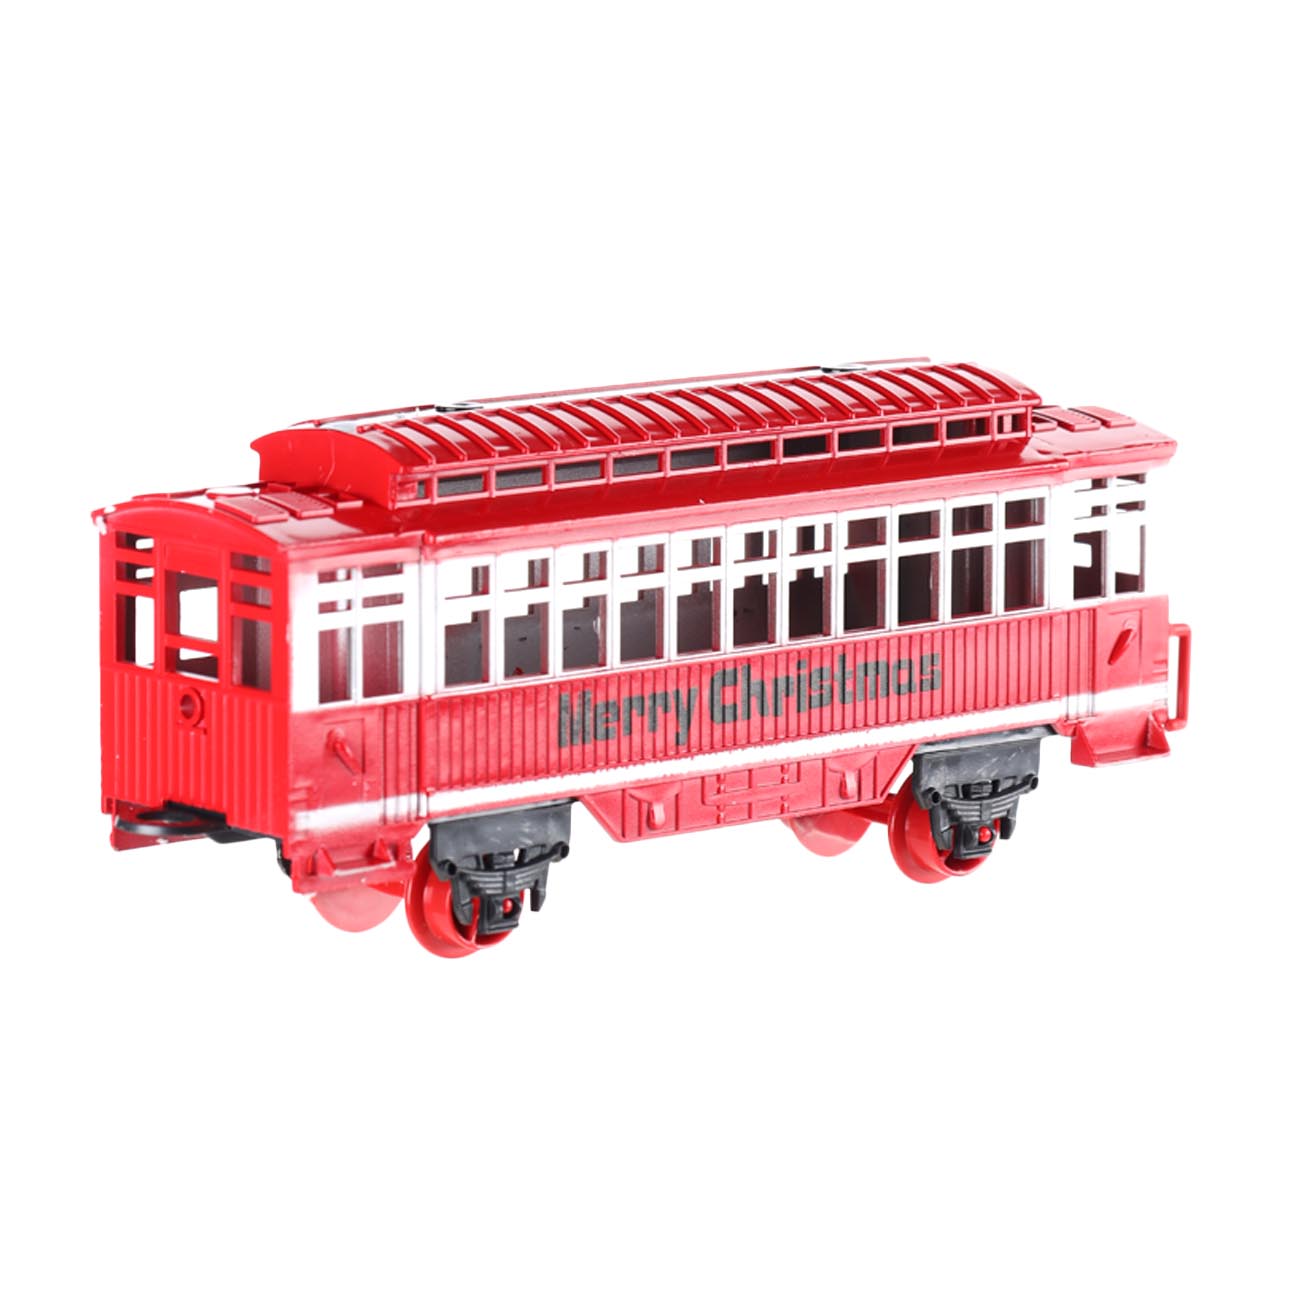 Железная дорога игрушечная, S, музыкальная, с подсветкой/дымом, пластик, Game rail изображение № 5